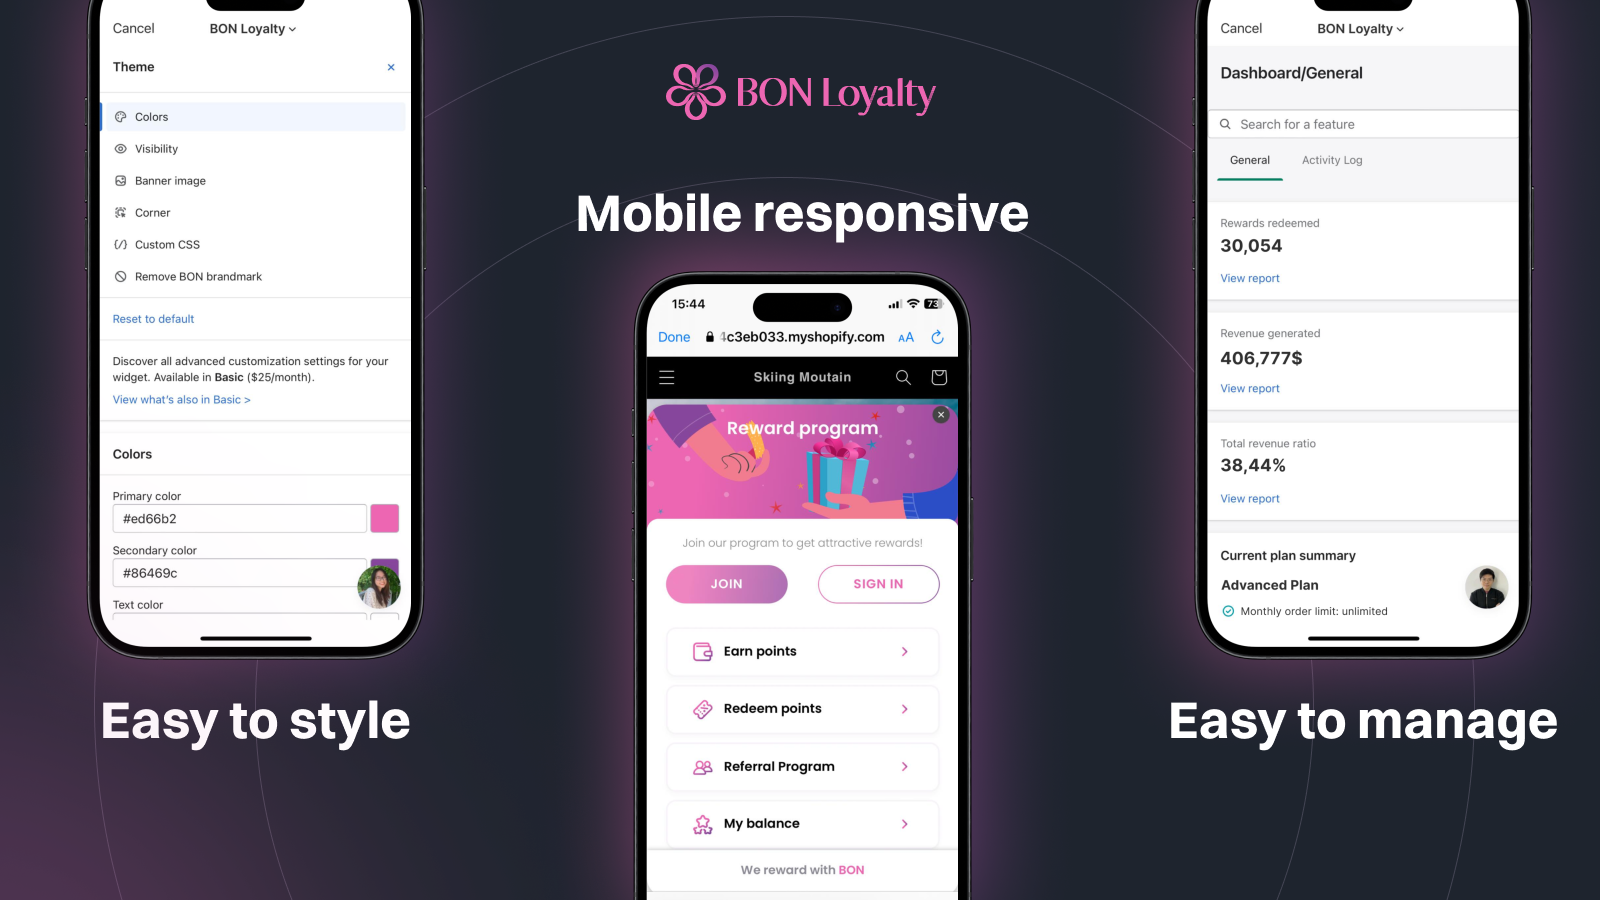 BON Loyalty tilbyder mobilresponsivt brugerinterface